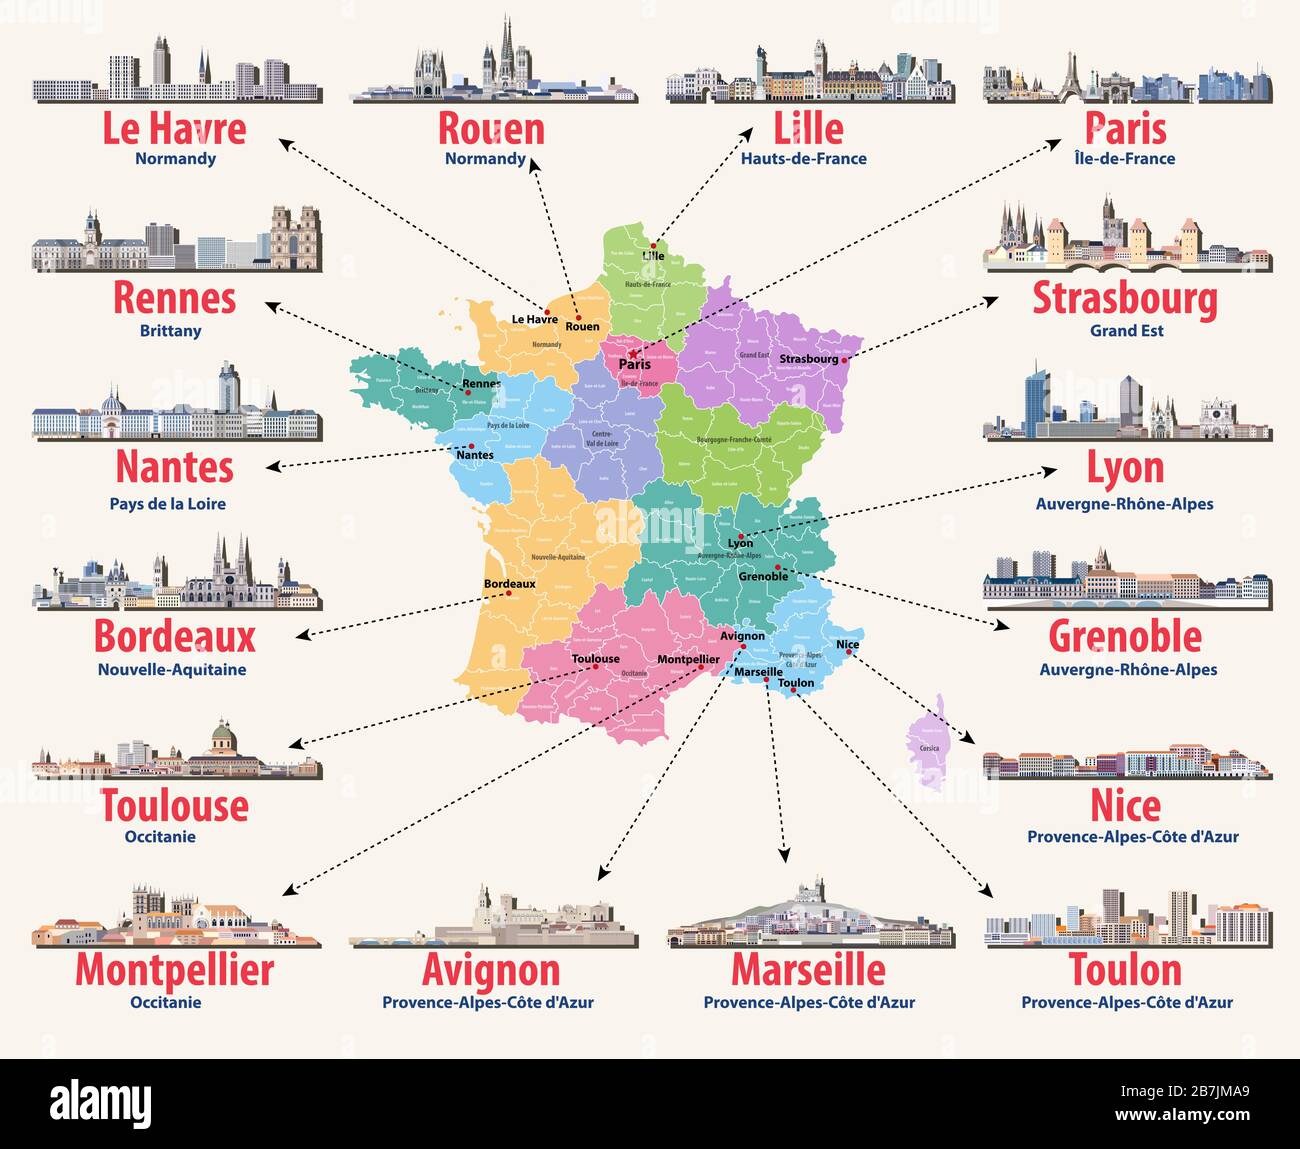 Mappa vettoriale della Francia con le principali città su di esso. Icone delle città francesi Illustrazione Vettoriale